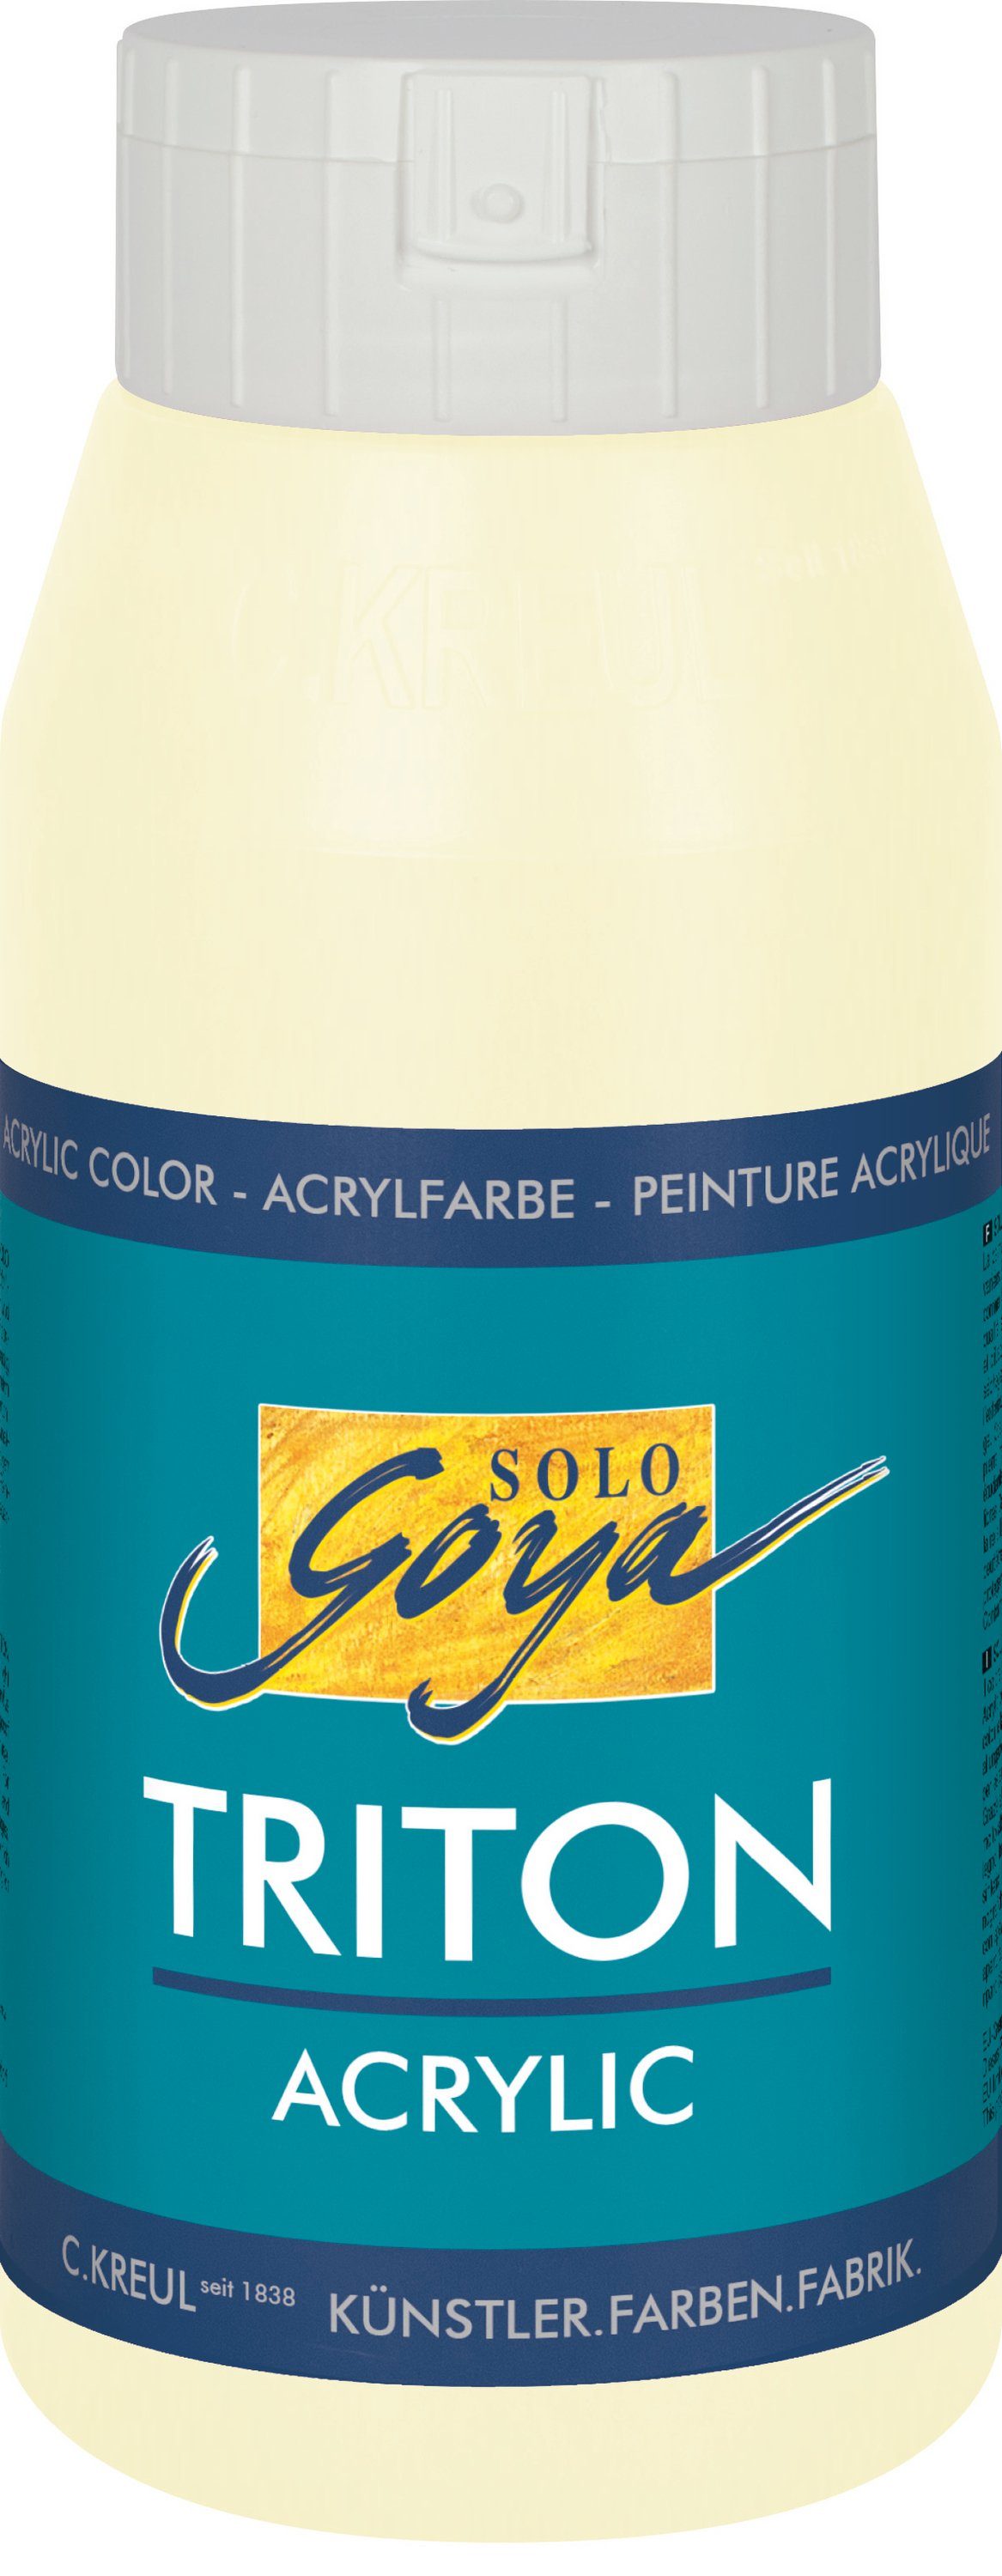 Kreul Acrylfarbe Solo Goya Elfenbein ml 750 Acrylic, Triton